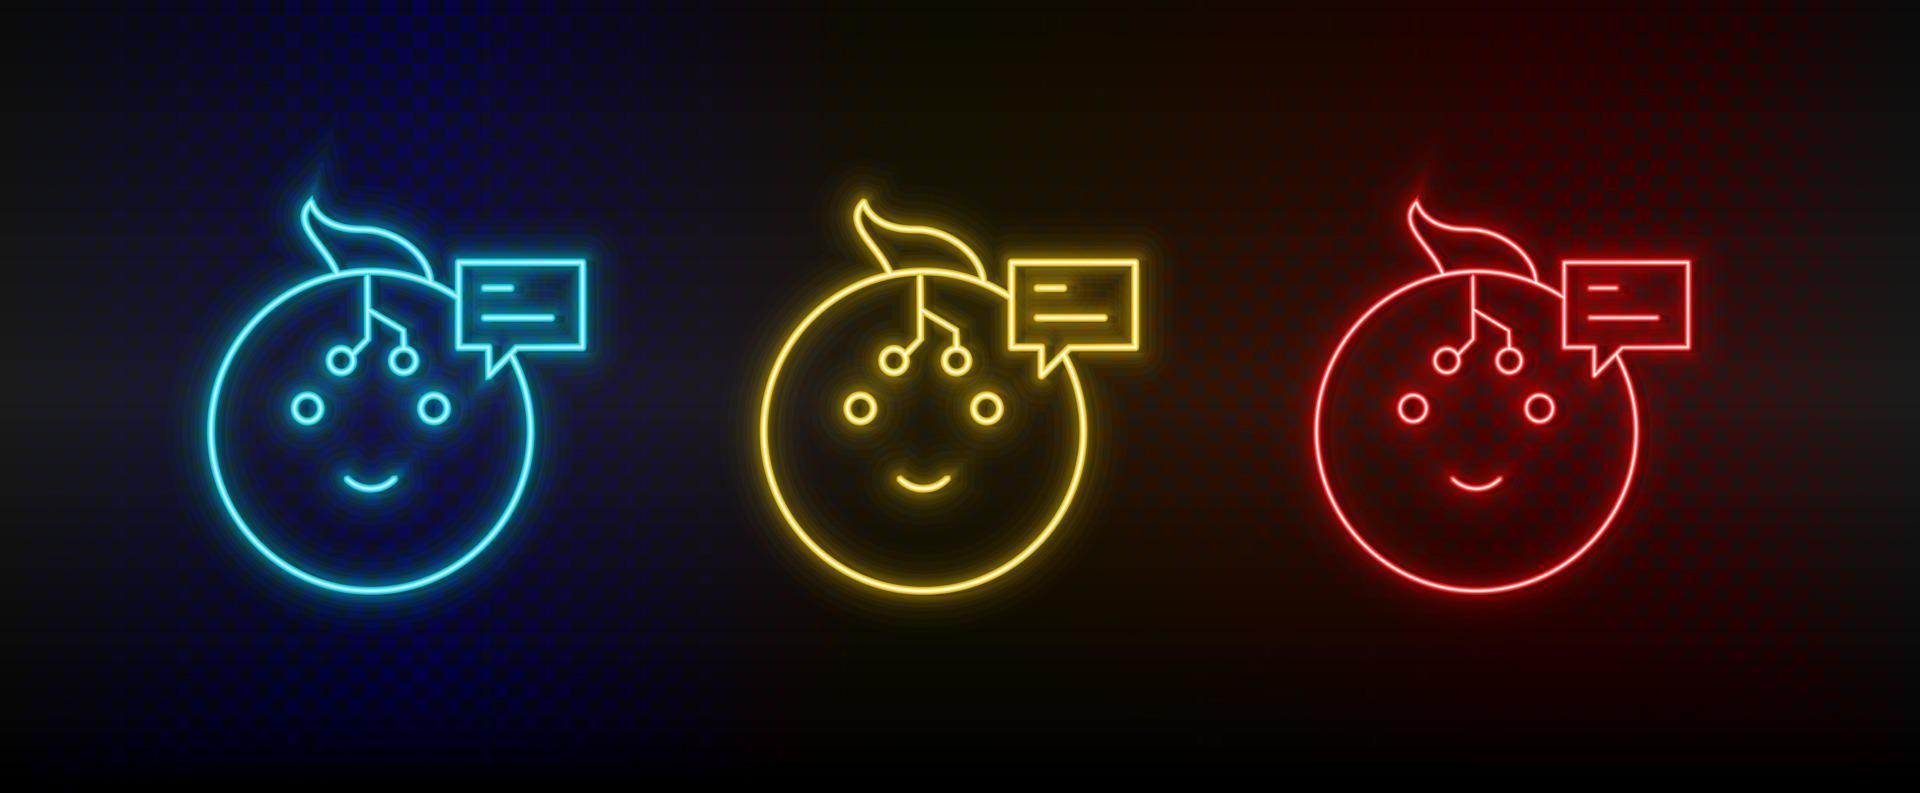 icônes au néon. robot parler chat bobble. ensemble d'icônes vectorielles néon rouge, bleu, jaune sur fond sombre vecteur